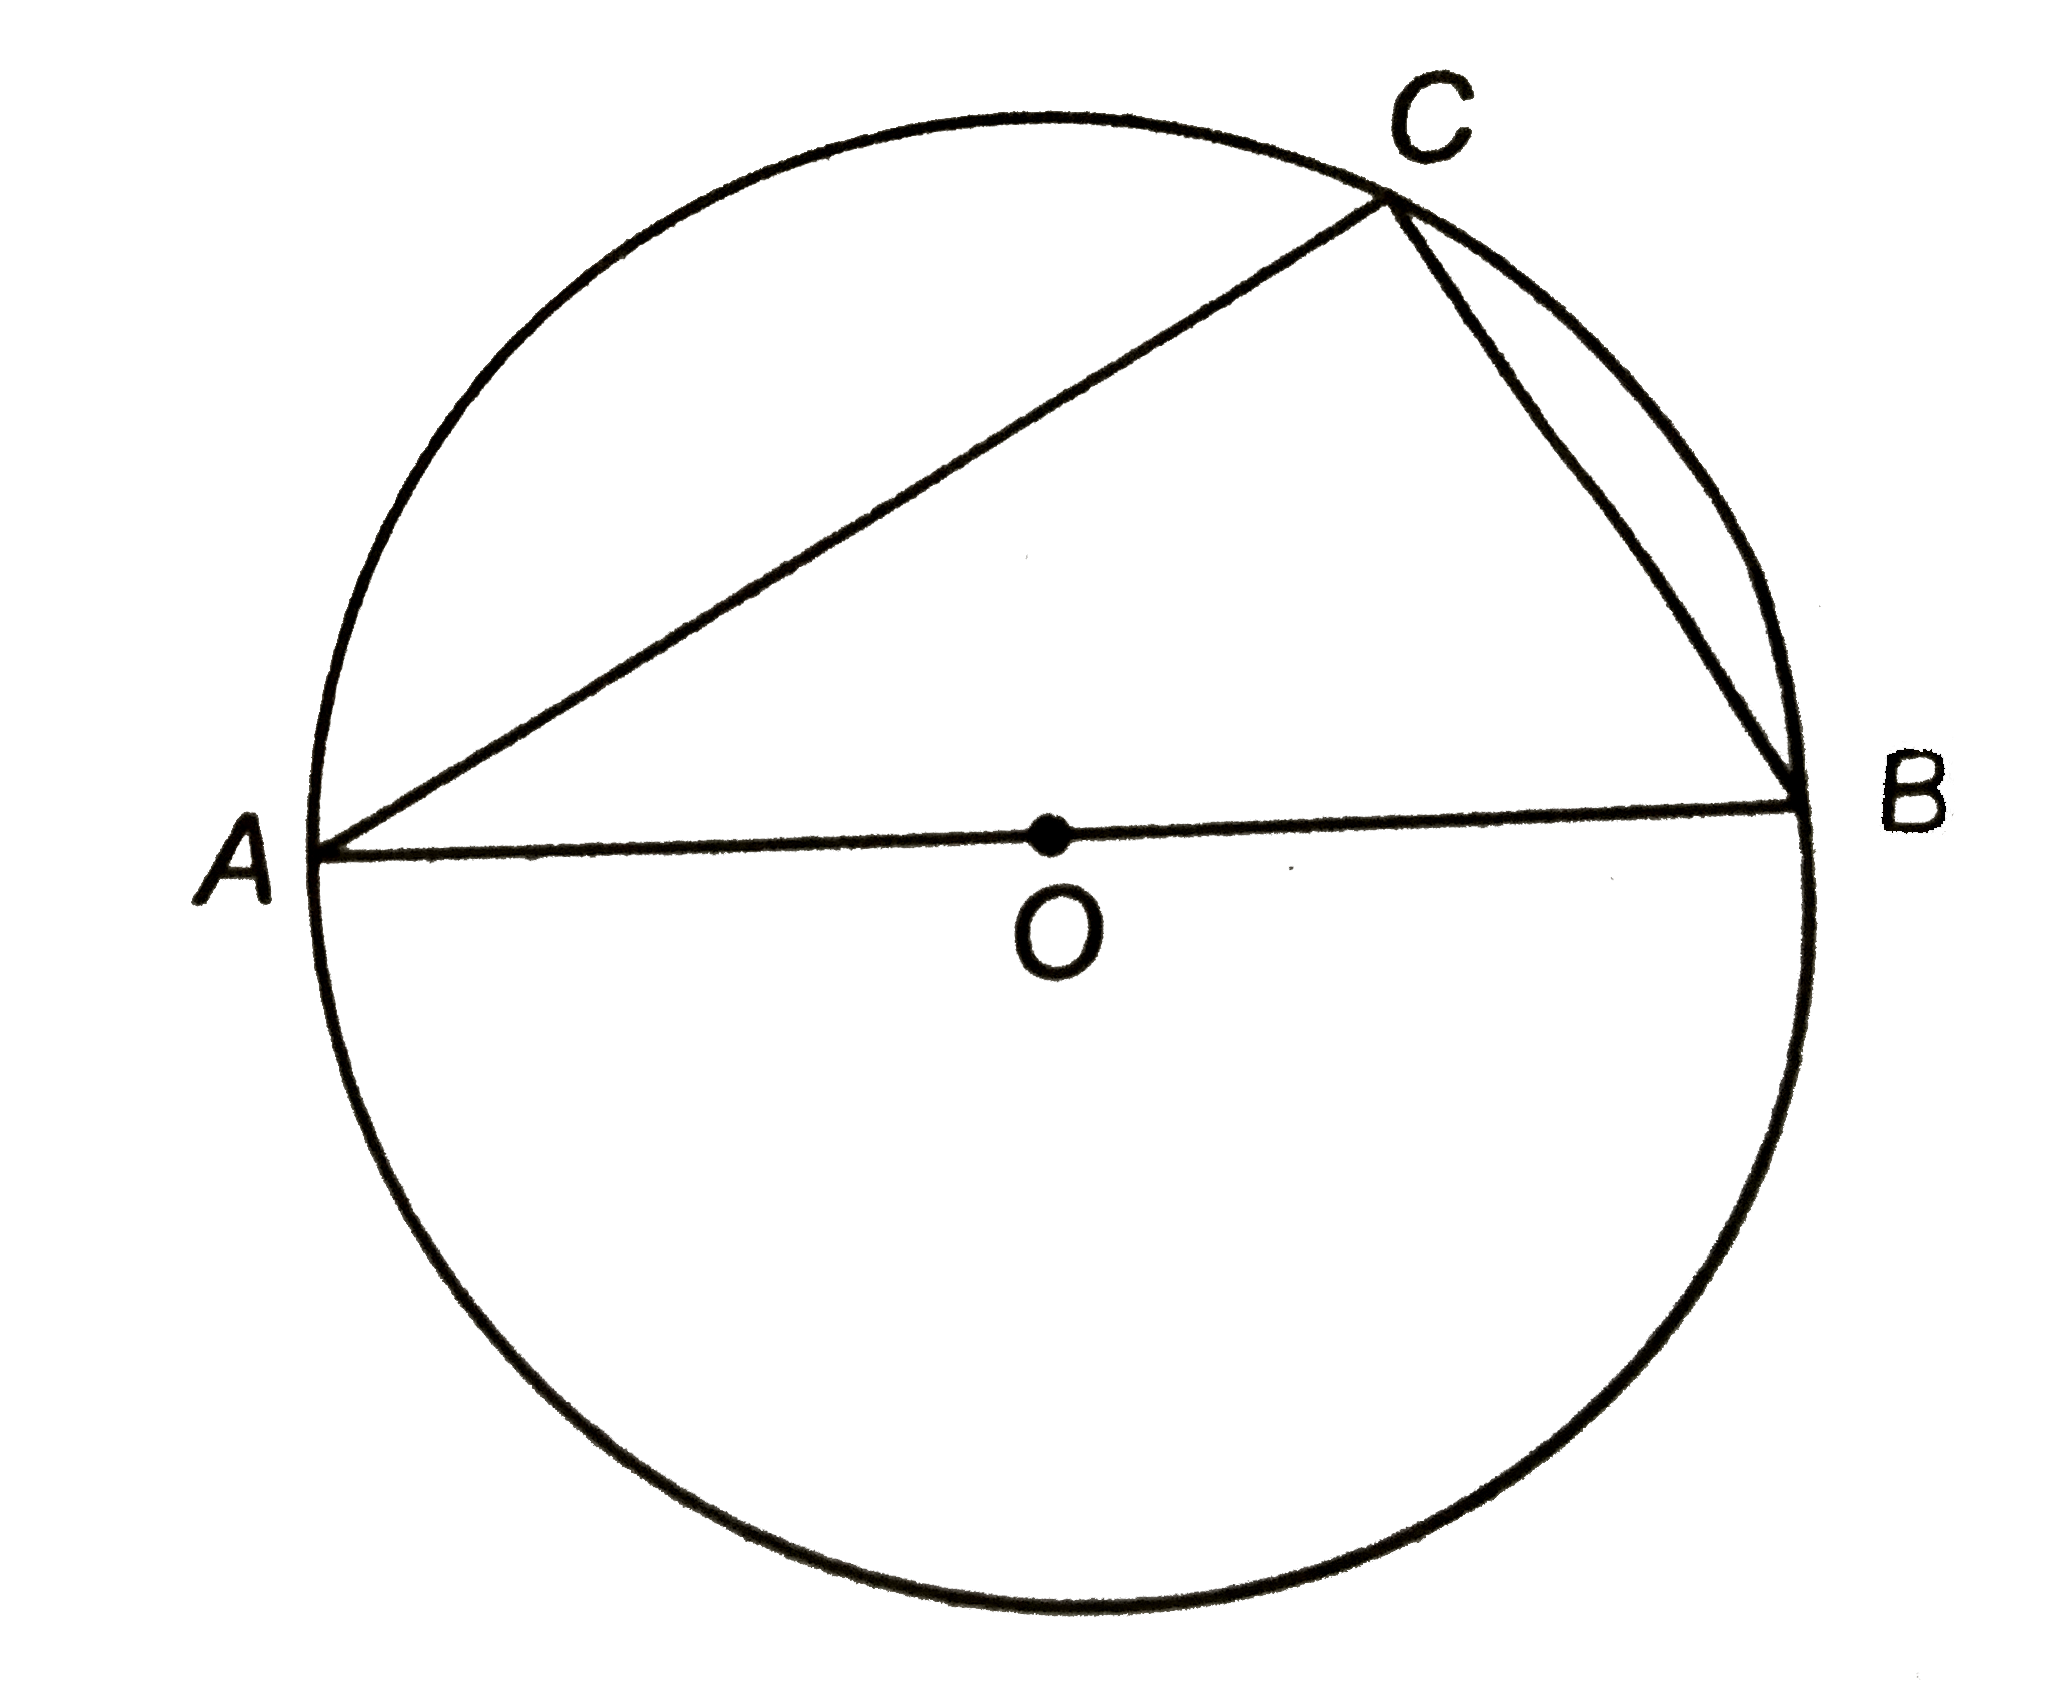 संलग्न चित्र में, 'O' वृत्त का केन्द्र है | वृत्त का एक व्यास AB है | यदि AC = 8 सेमी और BC = 6 सेमी है, तो वृत्त की त्रिज्या ज्ञात कीजिए |